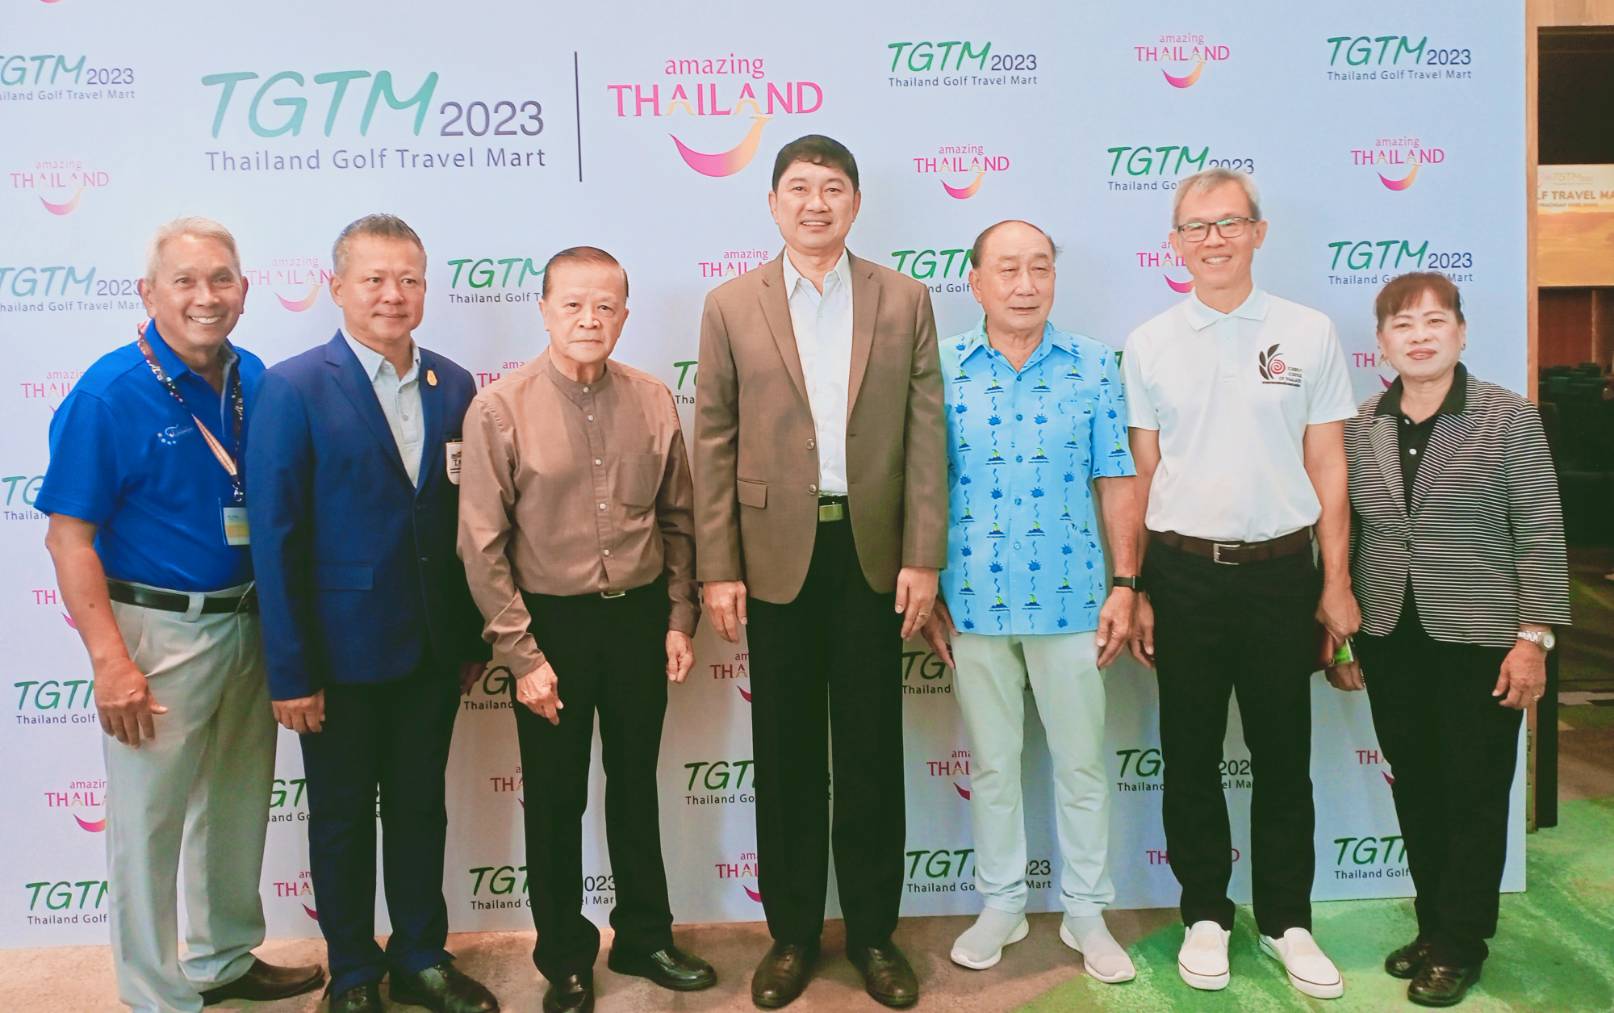 ประจวบคีรีขันธ์-สนามกอล์ฟหลวงหัวหินขานรับ “Thailand Golf tarvel Mart (TGTM) 2023”